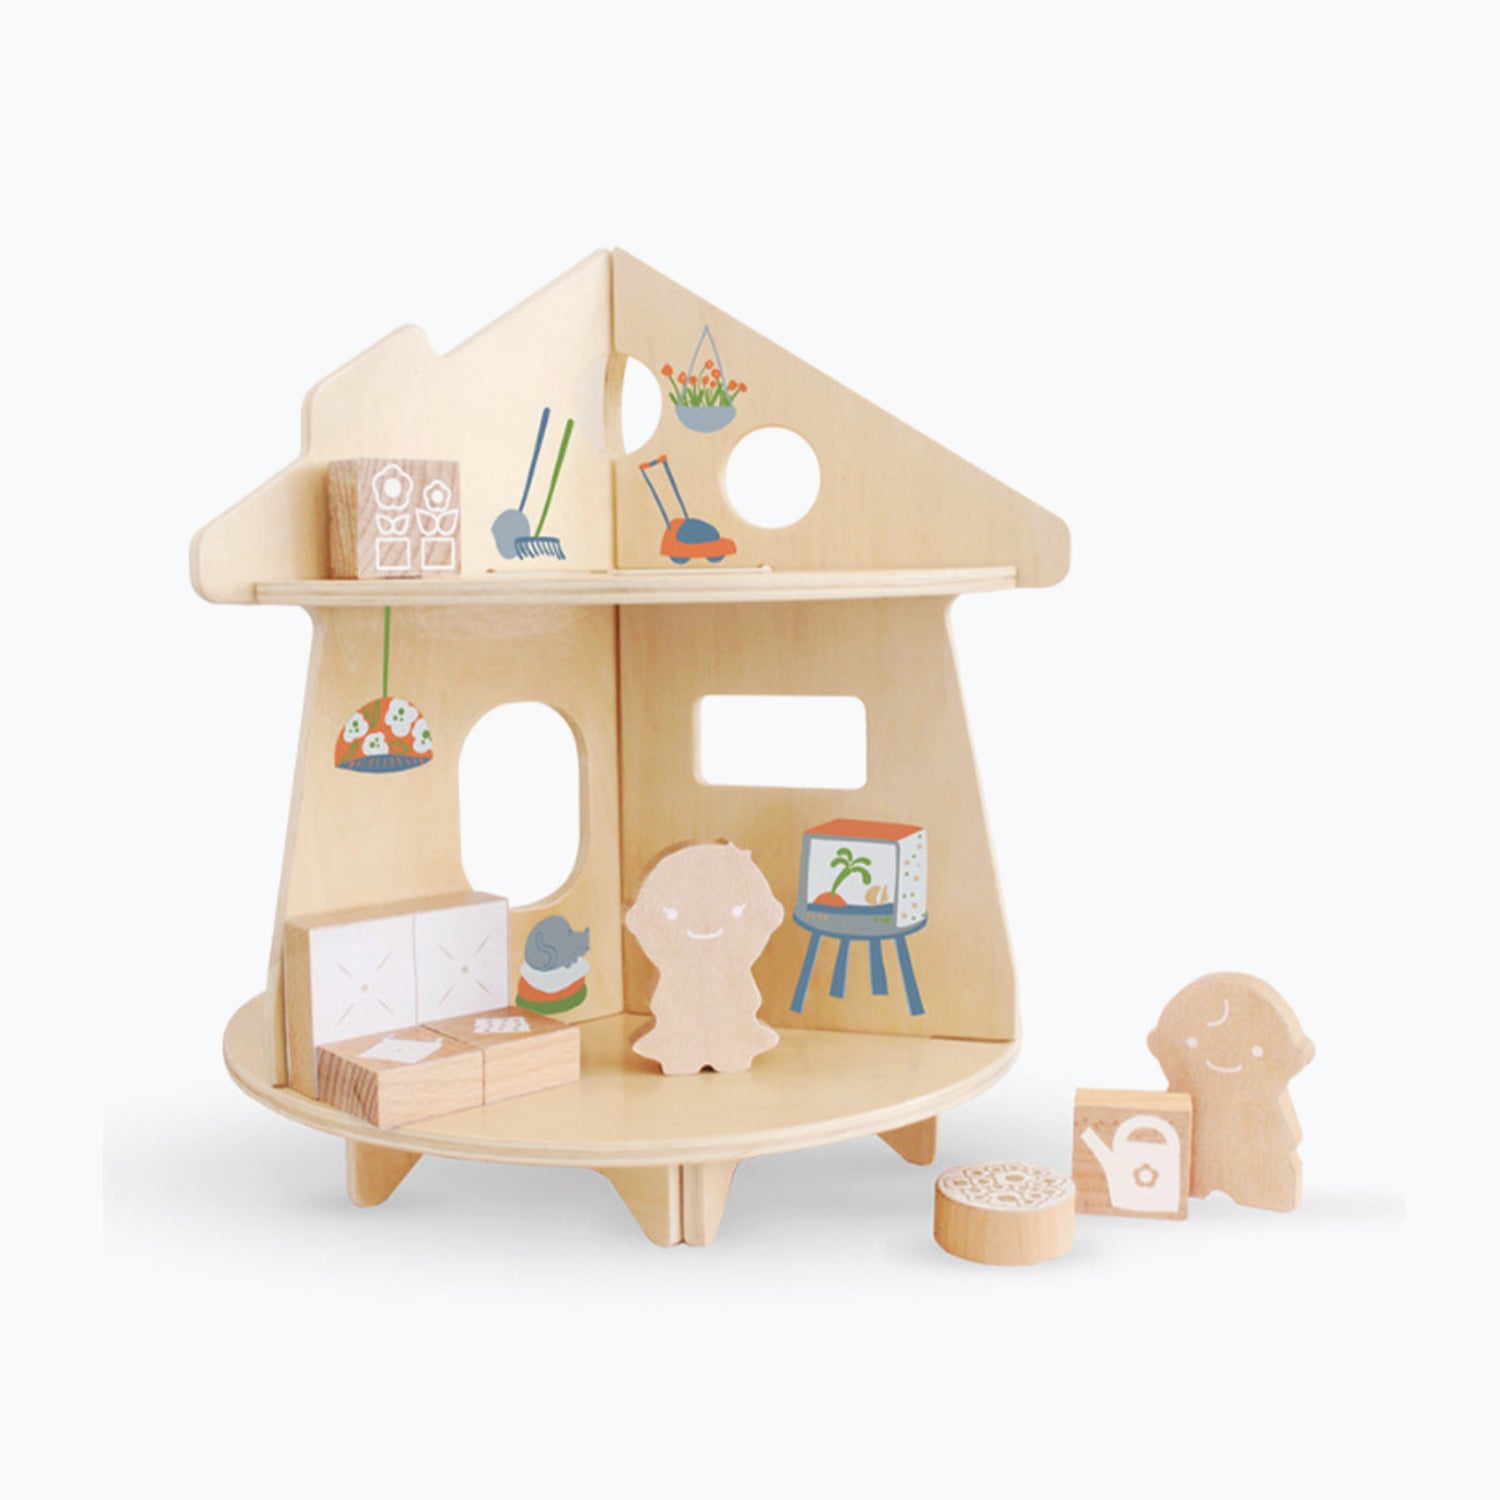 An image of Wooden Playhouse - PortaPlay House of Fun | Oribel